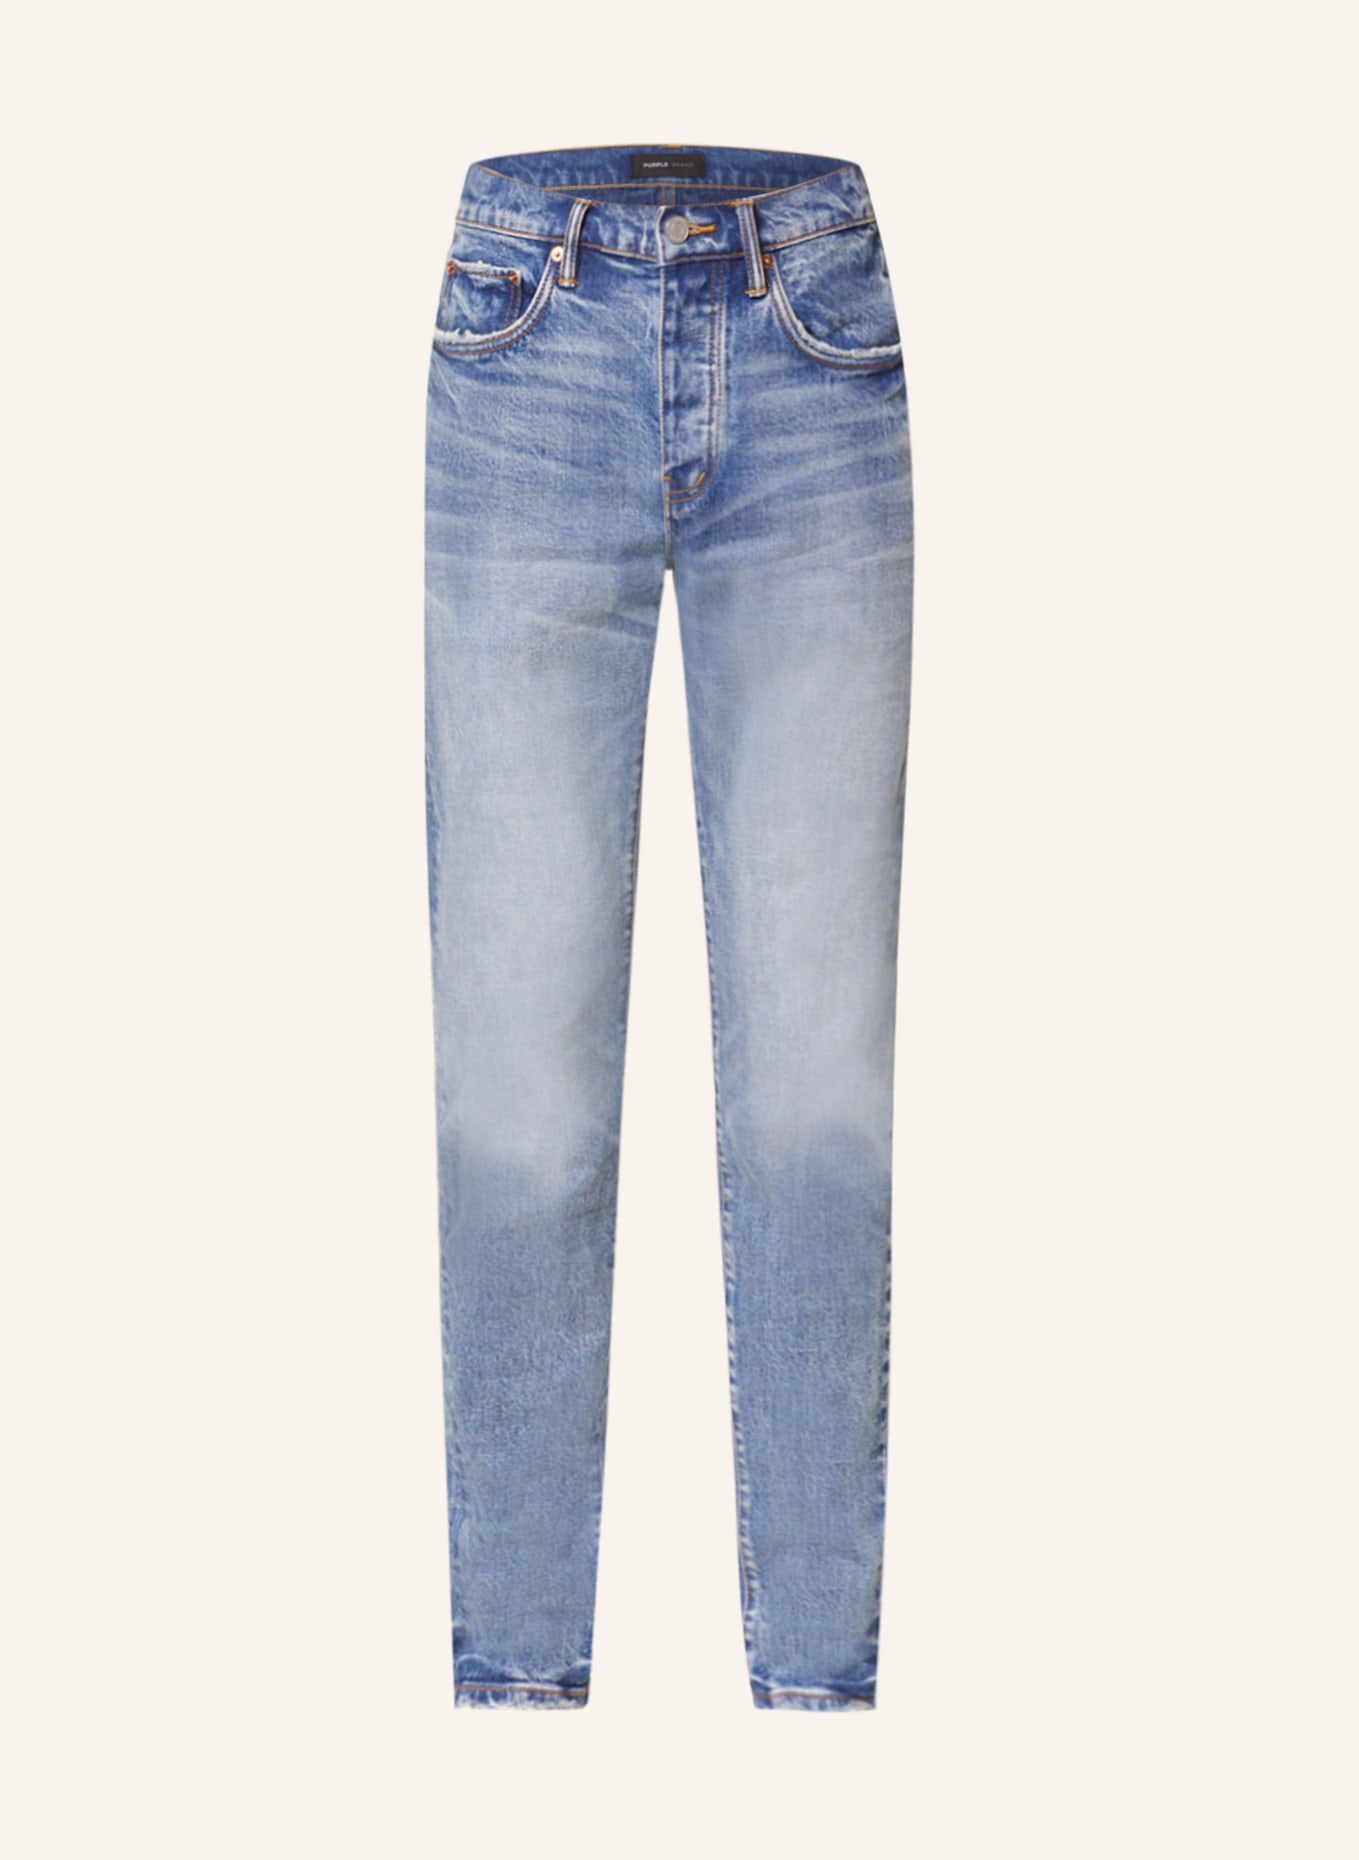 PURPLE BRAND Jeans slim fit in mdwv mid indigo worn